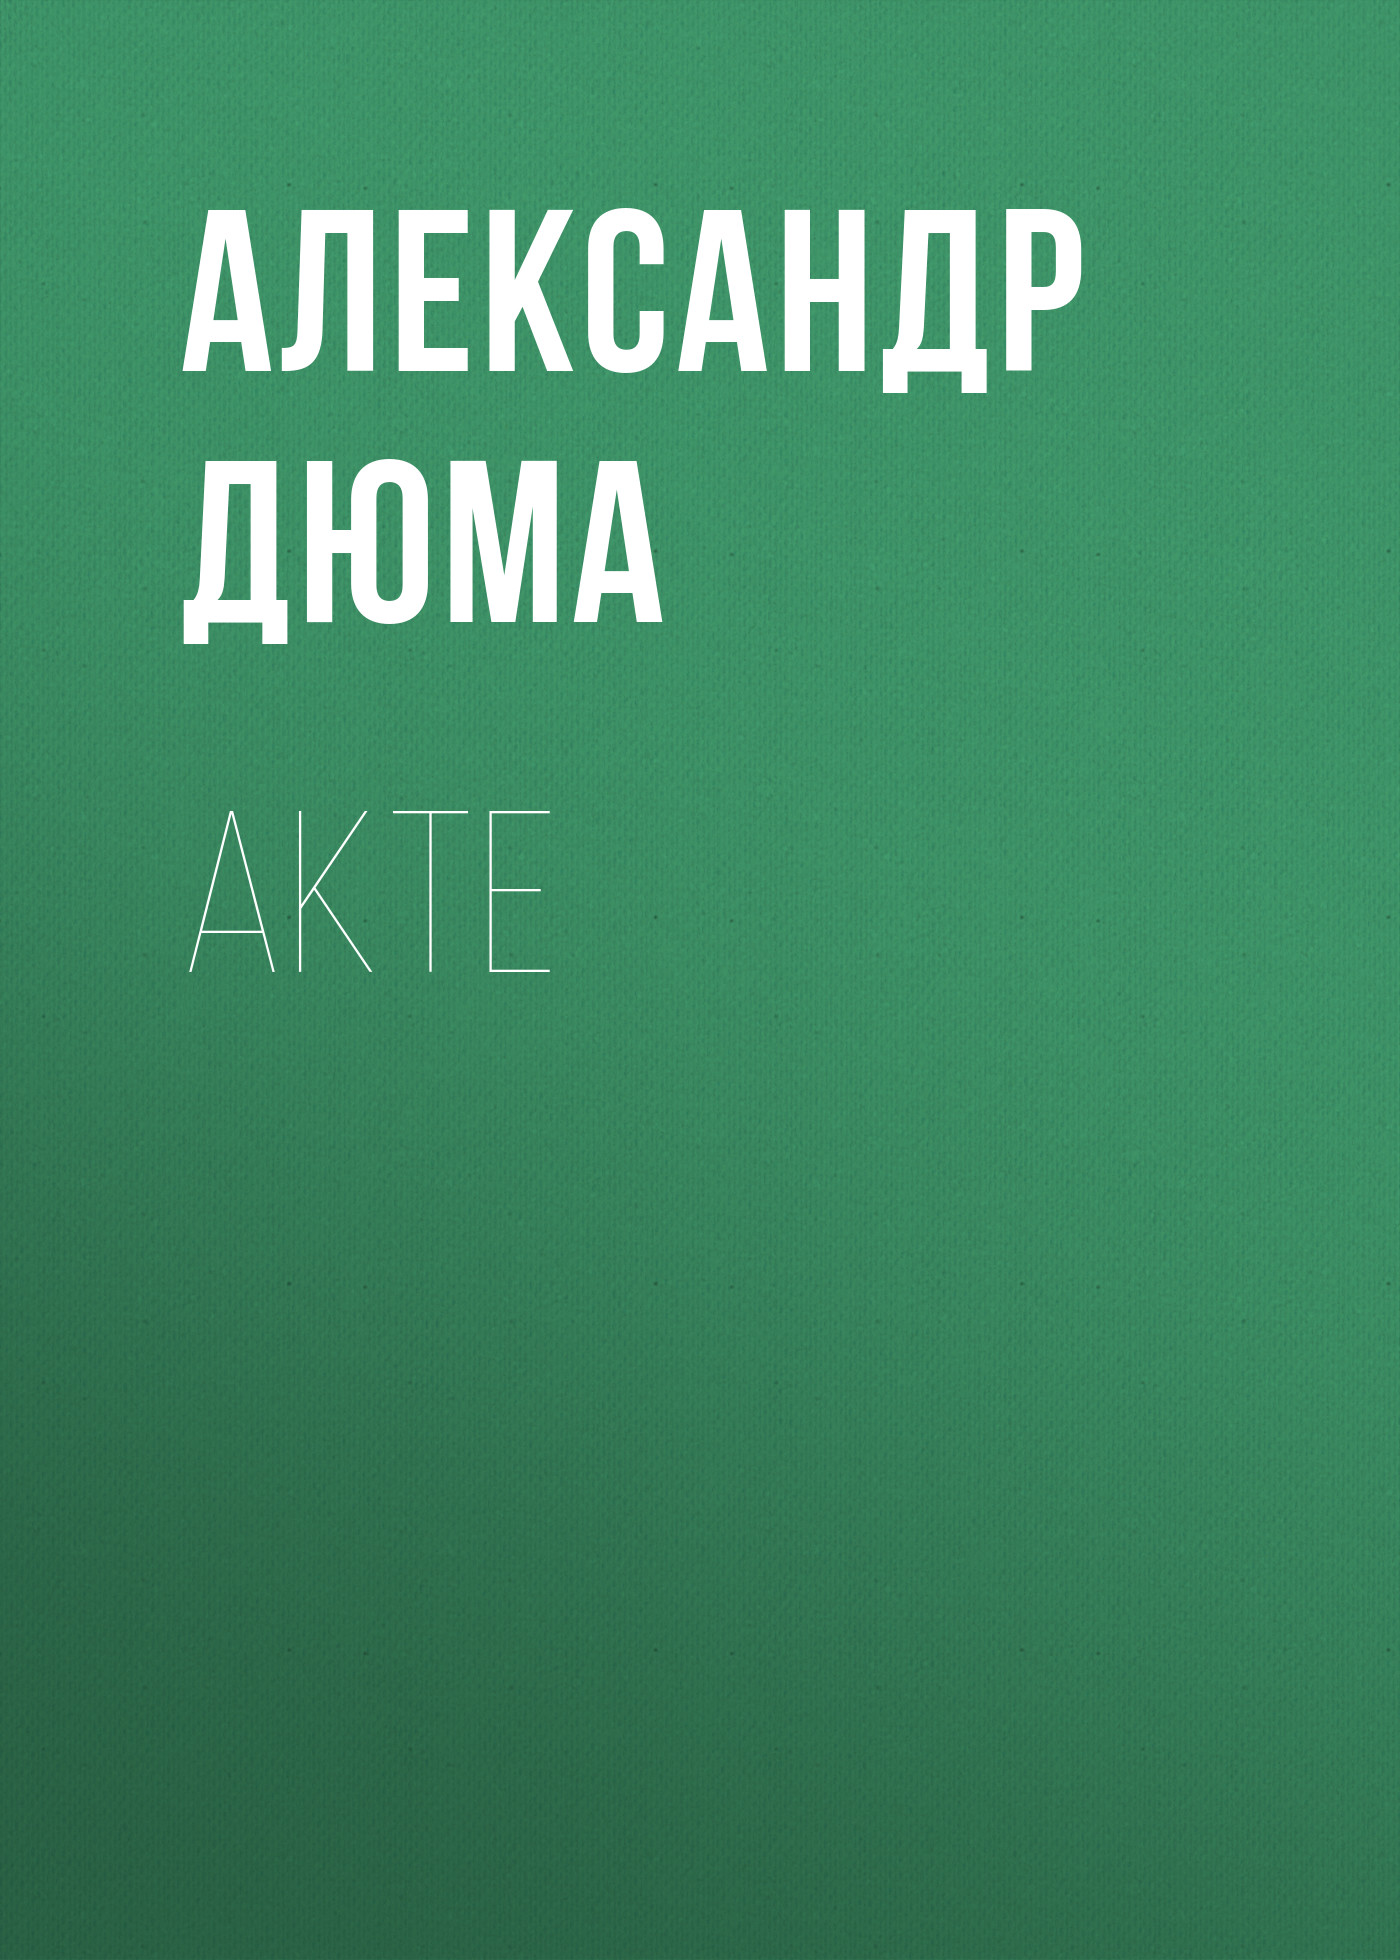 Книга Akte из серии , созданная Alexandre Dumas der Ältere, может относится к жанру Зарубежная классика. Стоимость электронной книги Akte с идентификатором 48631876 составляет 0 руб.